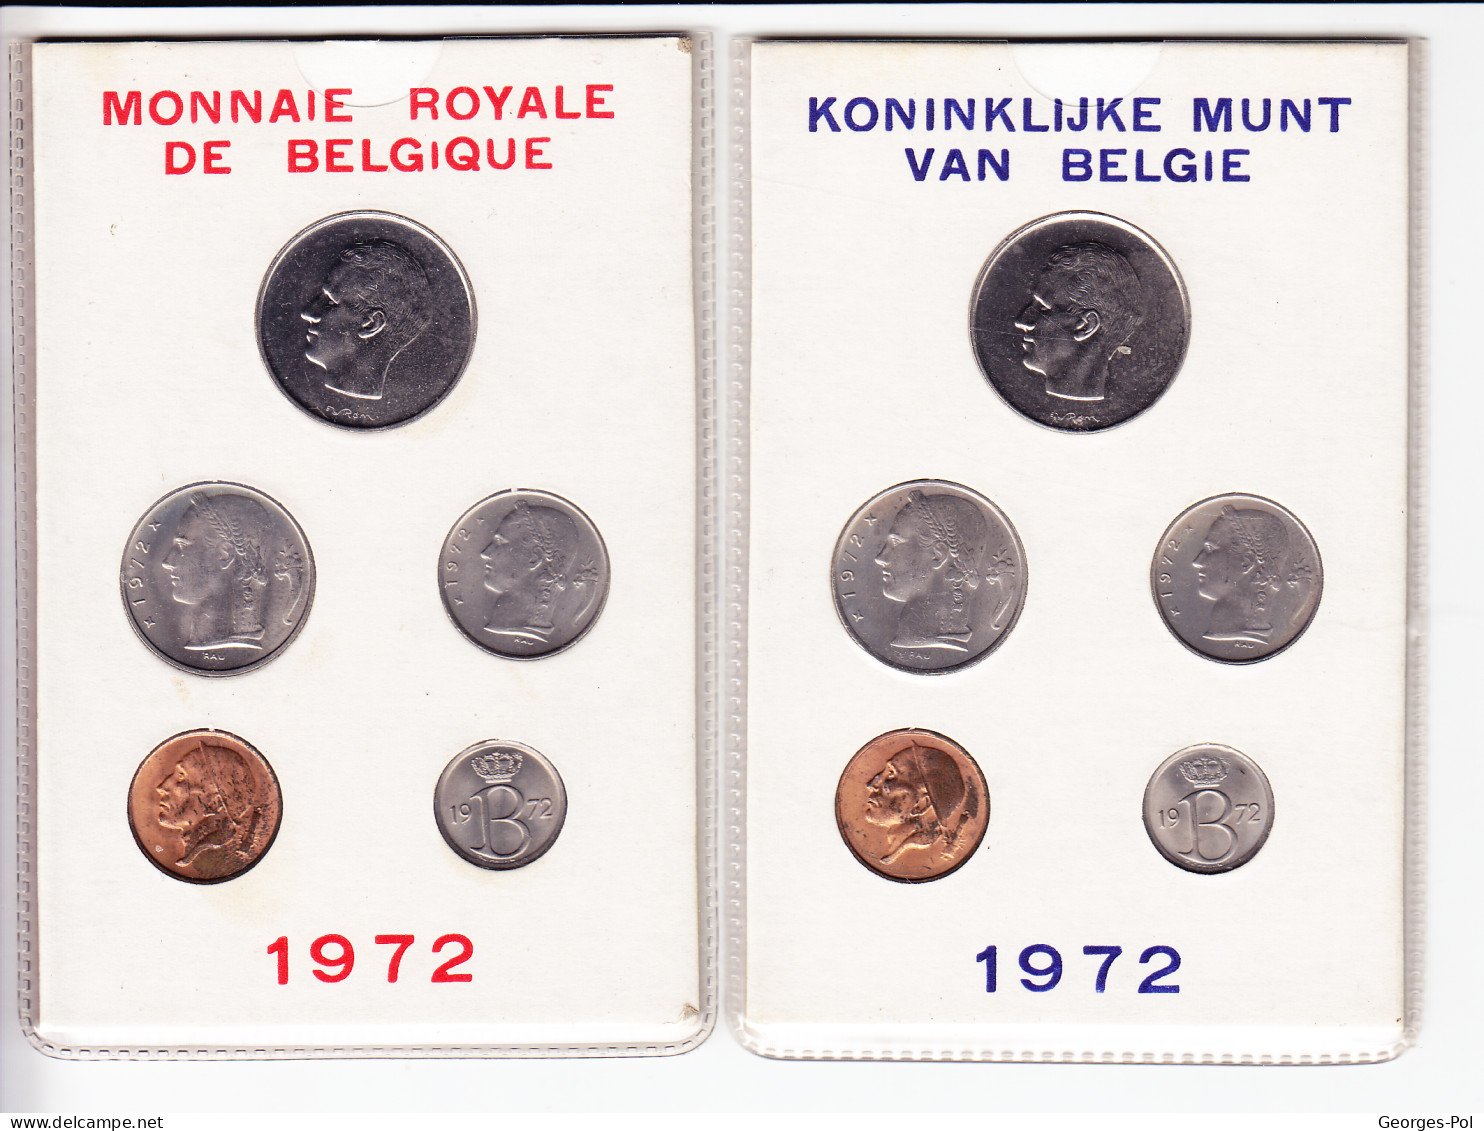 Monnaie Royale De Belgique 1972 Koninklijke Munt Van België. 2 Cartes De 5 Pièces Non Circulées - FDEC, BU, BE & Münzkassetten